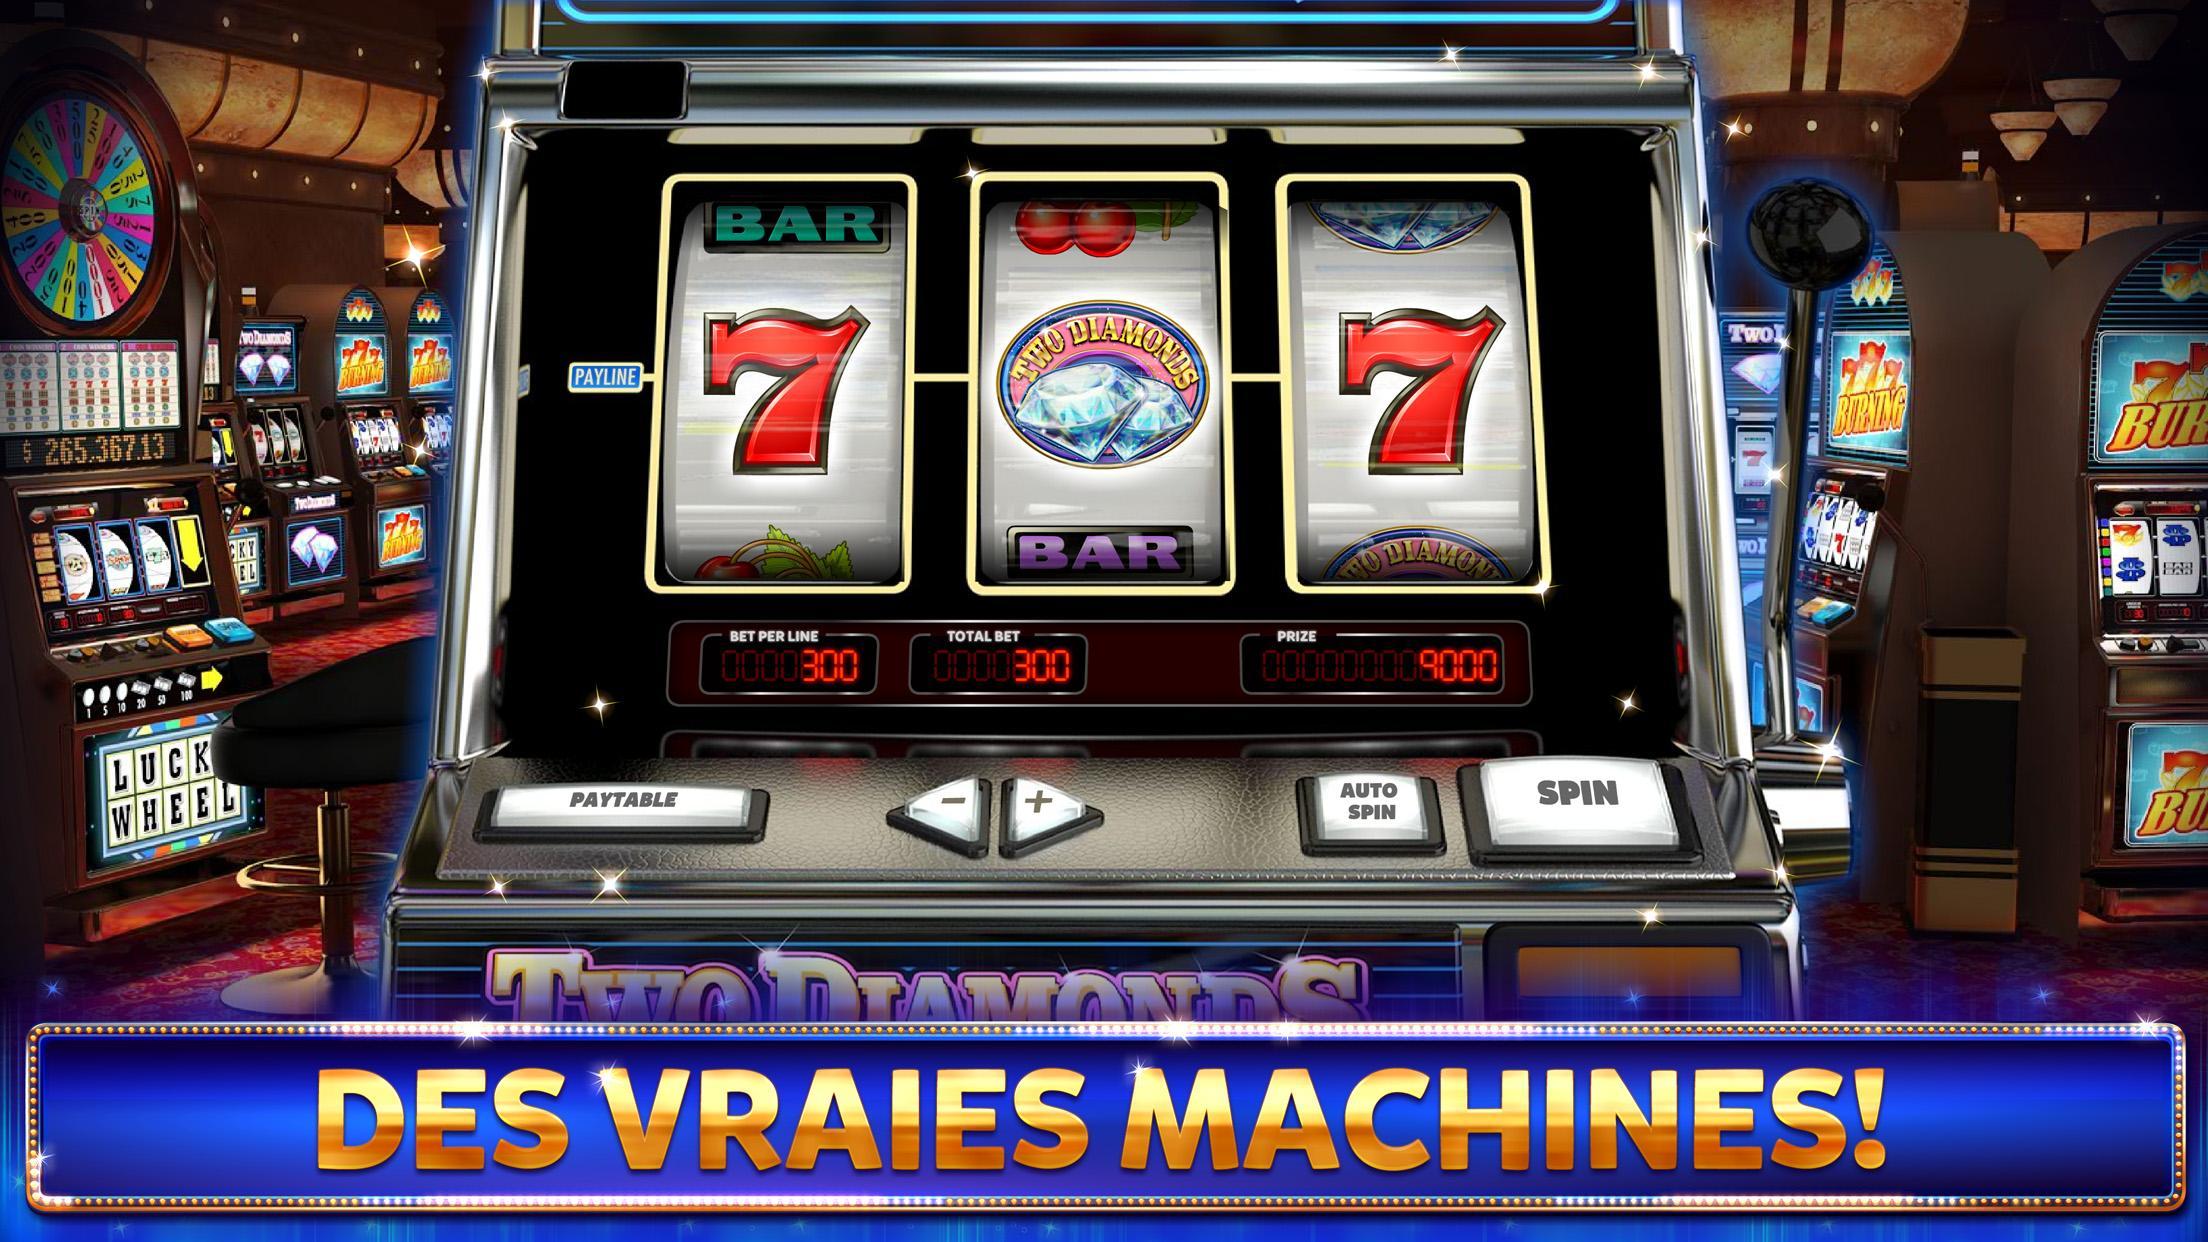 Игровые автоматы рейтинг новых лучших strahov art. Игровой автомат казино. Экран игрового автомата. Игровые автоматы Плейтек. Игровой автомат гонки.